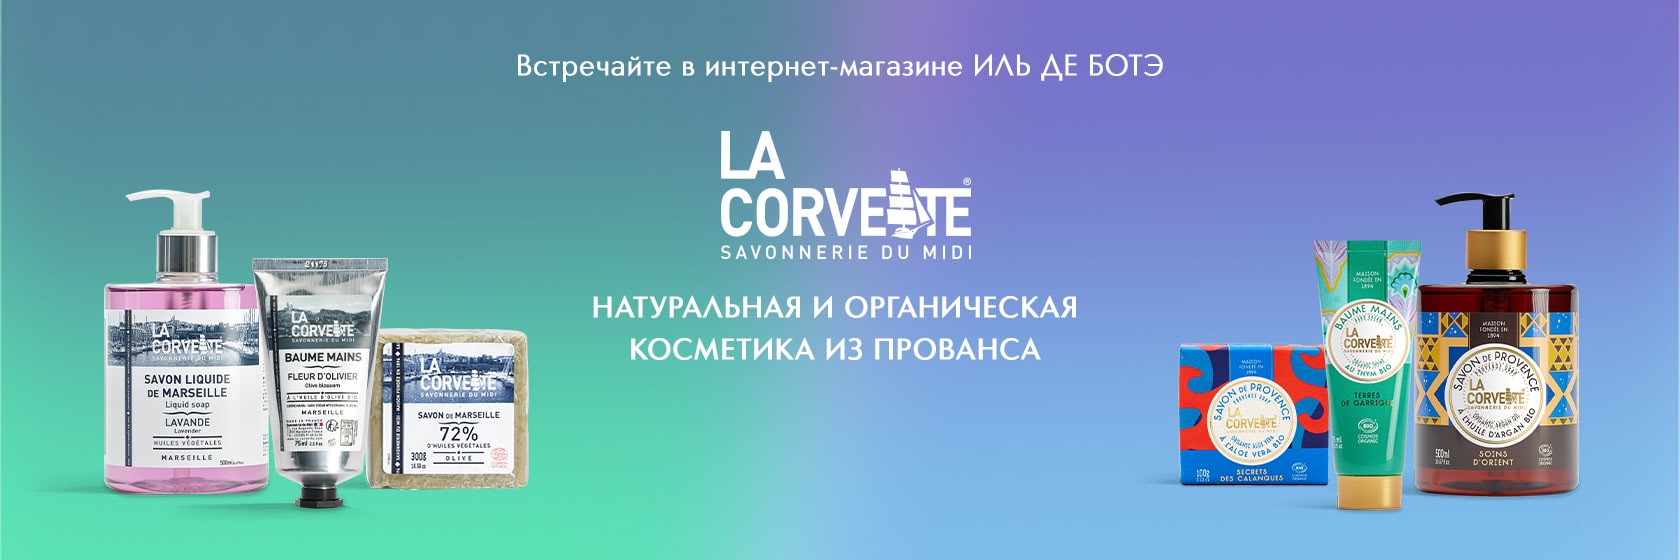 Встречайте новый бренд LA CORVETTE в&#160;ИЛЬ&#160;ДЕ&#160;БОТЭ!